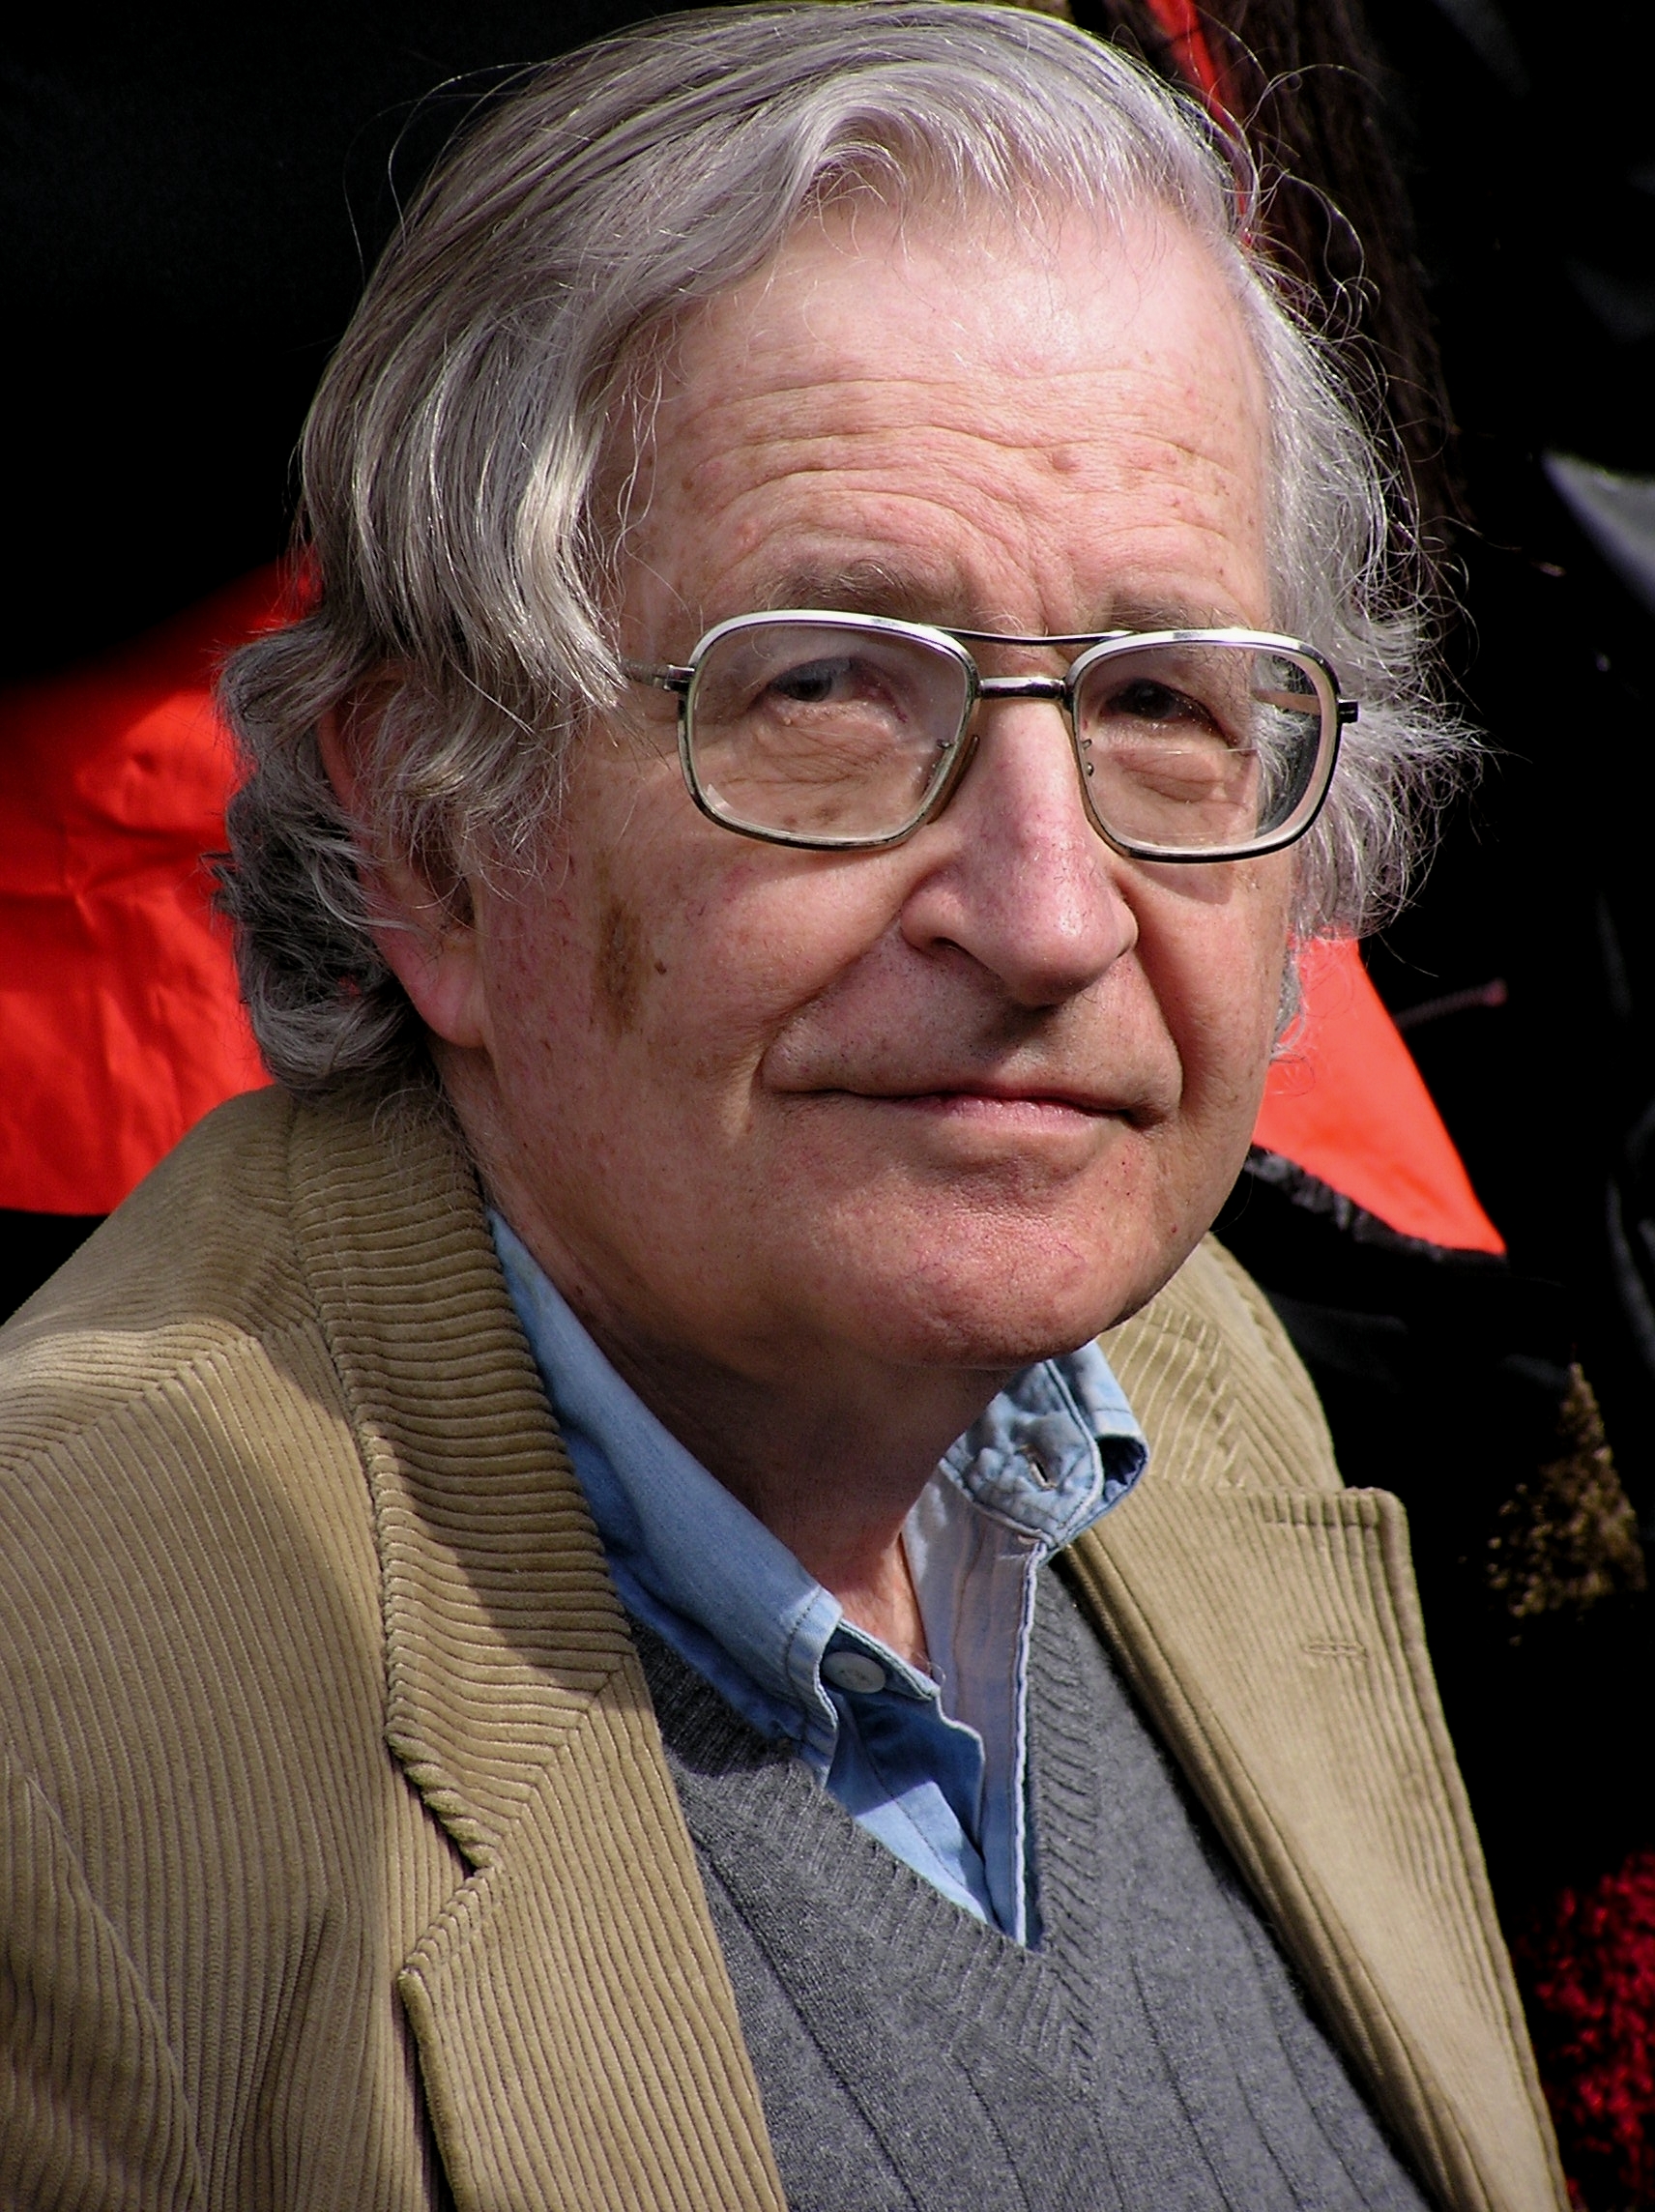 Mitkä ovat Noam Chomskyn poliittiset näkemykset?